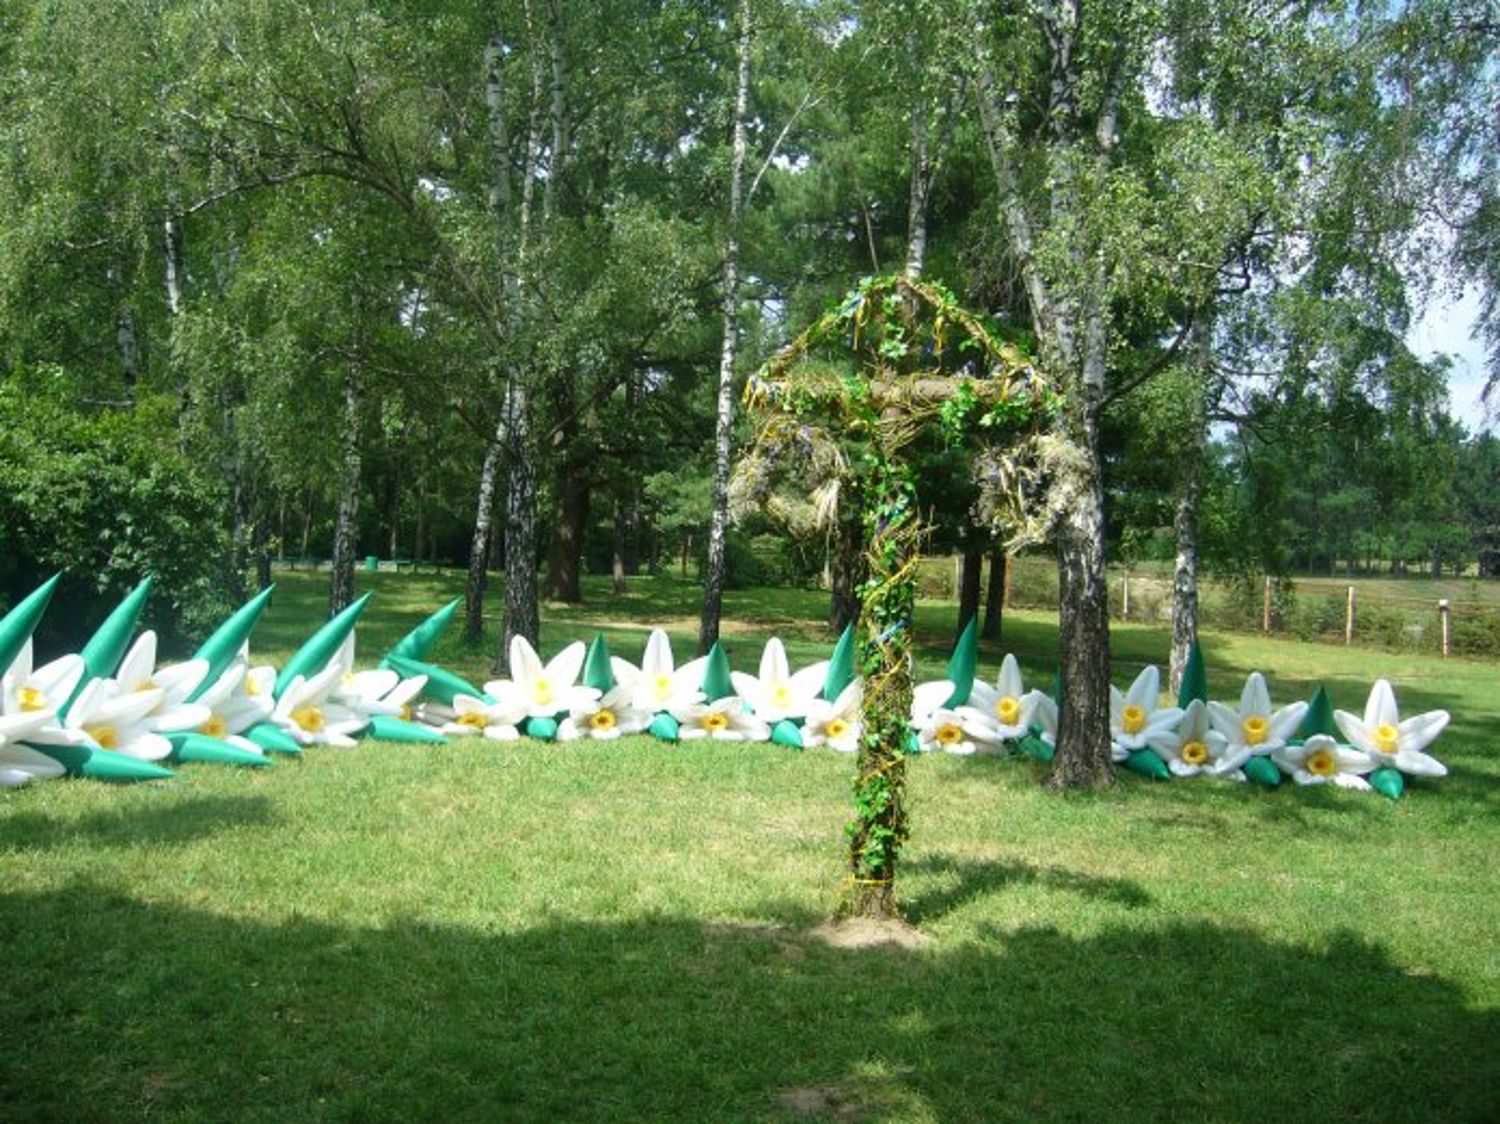 Мирный Киев летом 2010 года. Часть 7. Ландшафты и архитектура Ботанического сада.